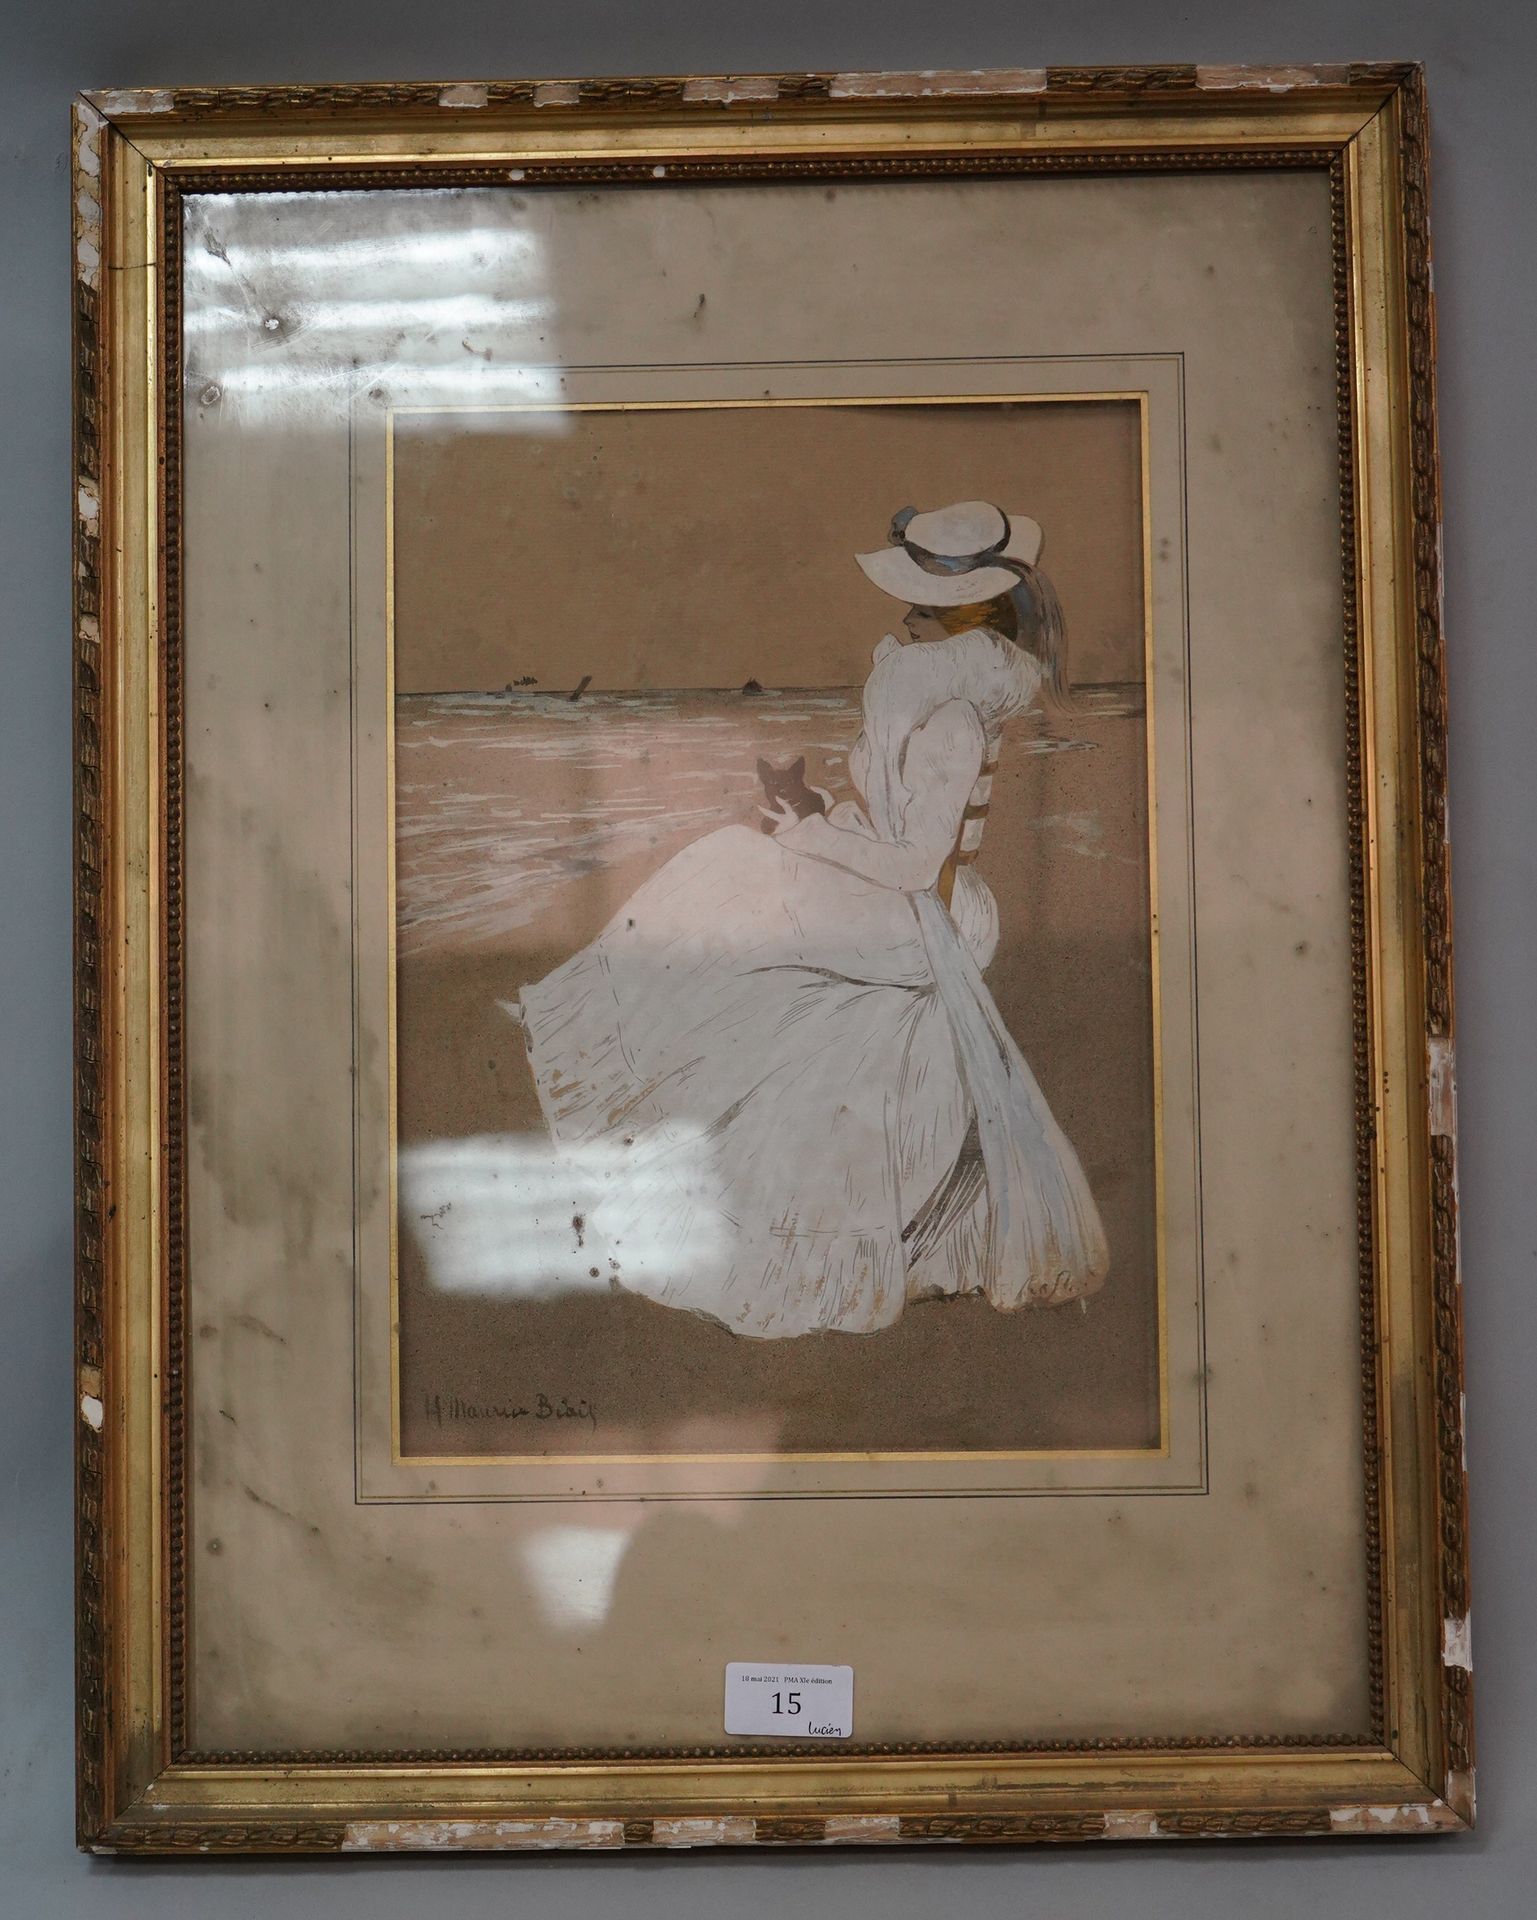 Null 莫里斯-比艾斯(1872-1926)

濒临大海的巴黎人

纸上水墨画，左下方签名。